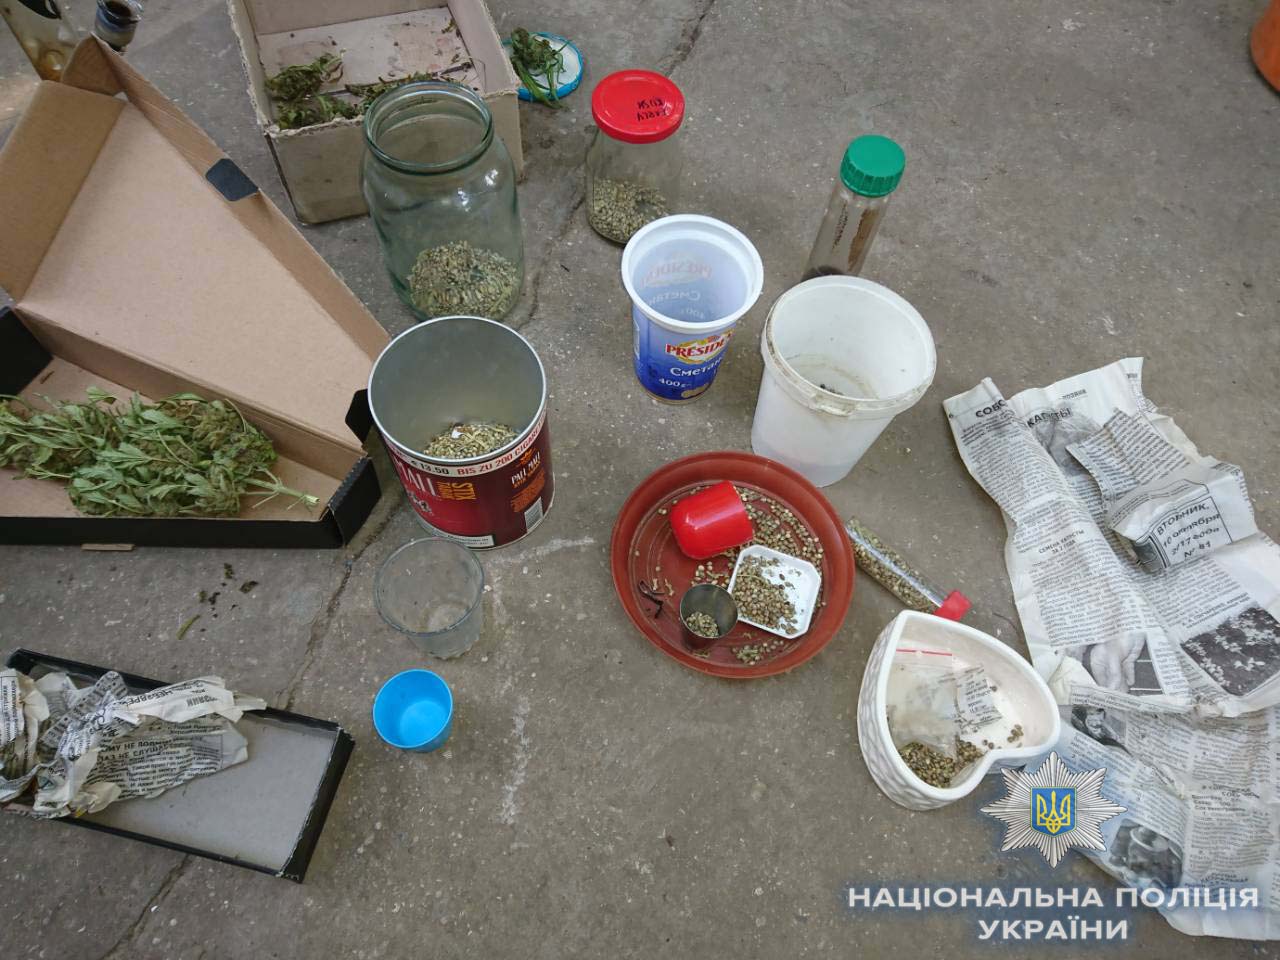 Профилактическая отработка Одесской области полицией: всего за один день - больше 10 задержан с наркотиками